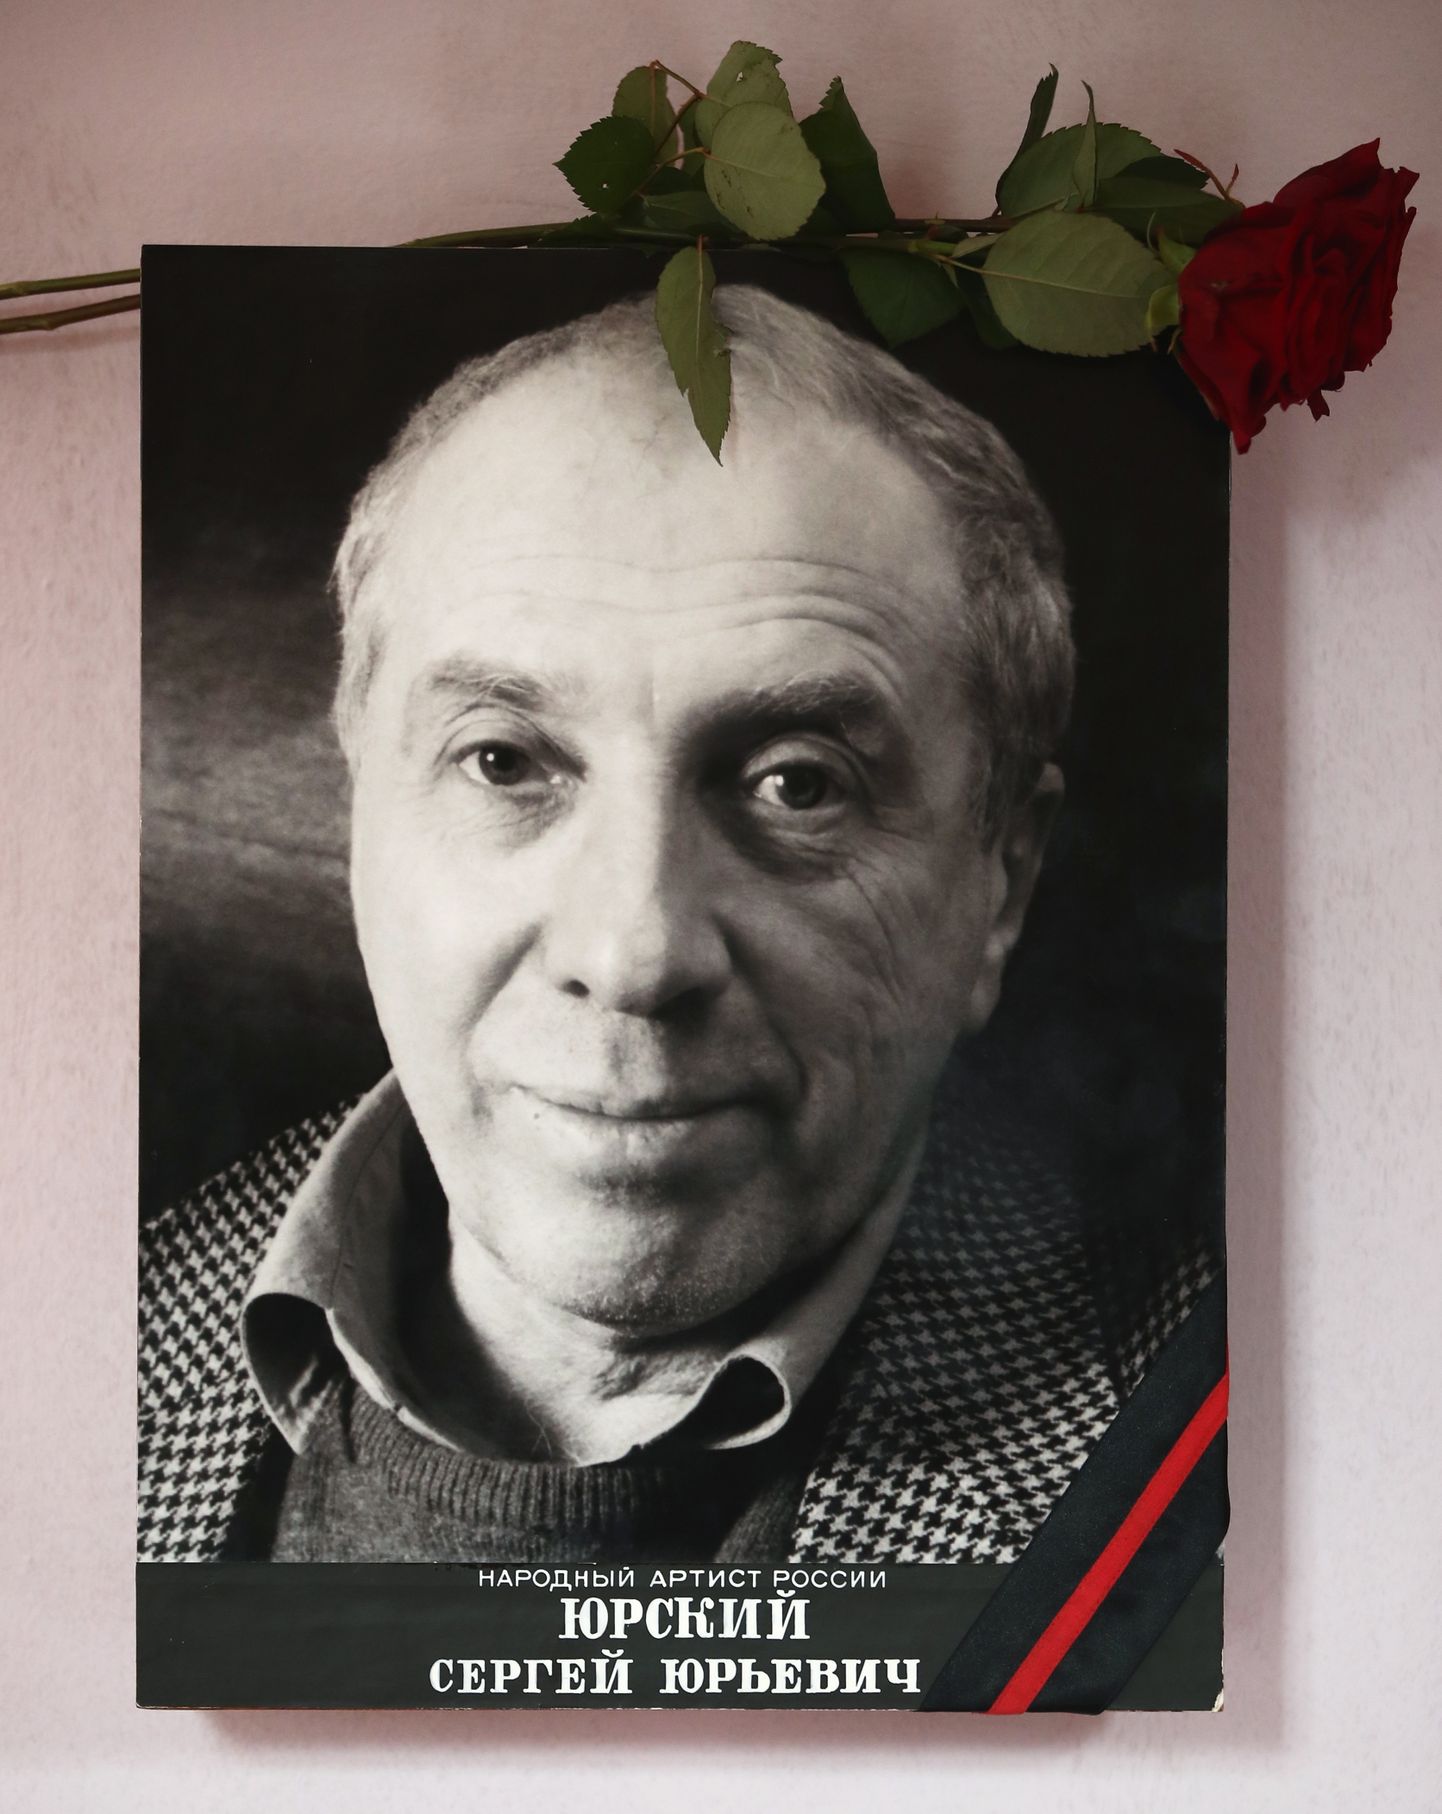 Сергей Юрский скончался в пятницу, 8 февраля.